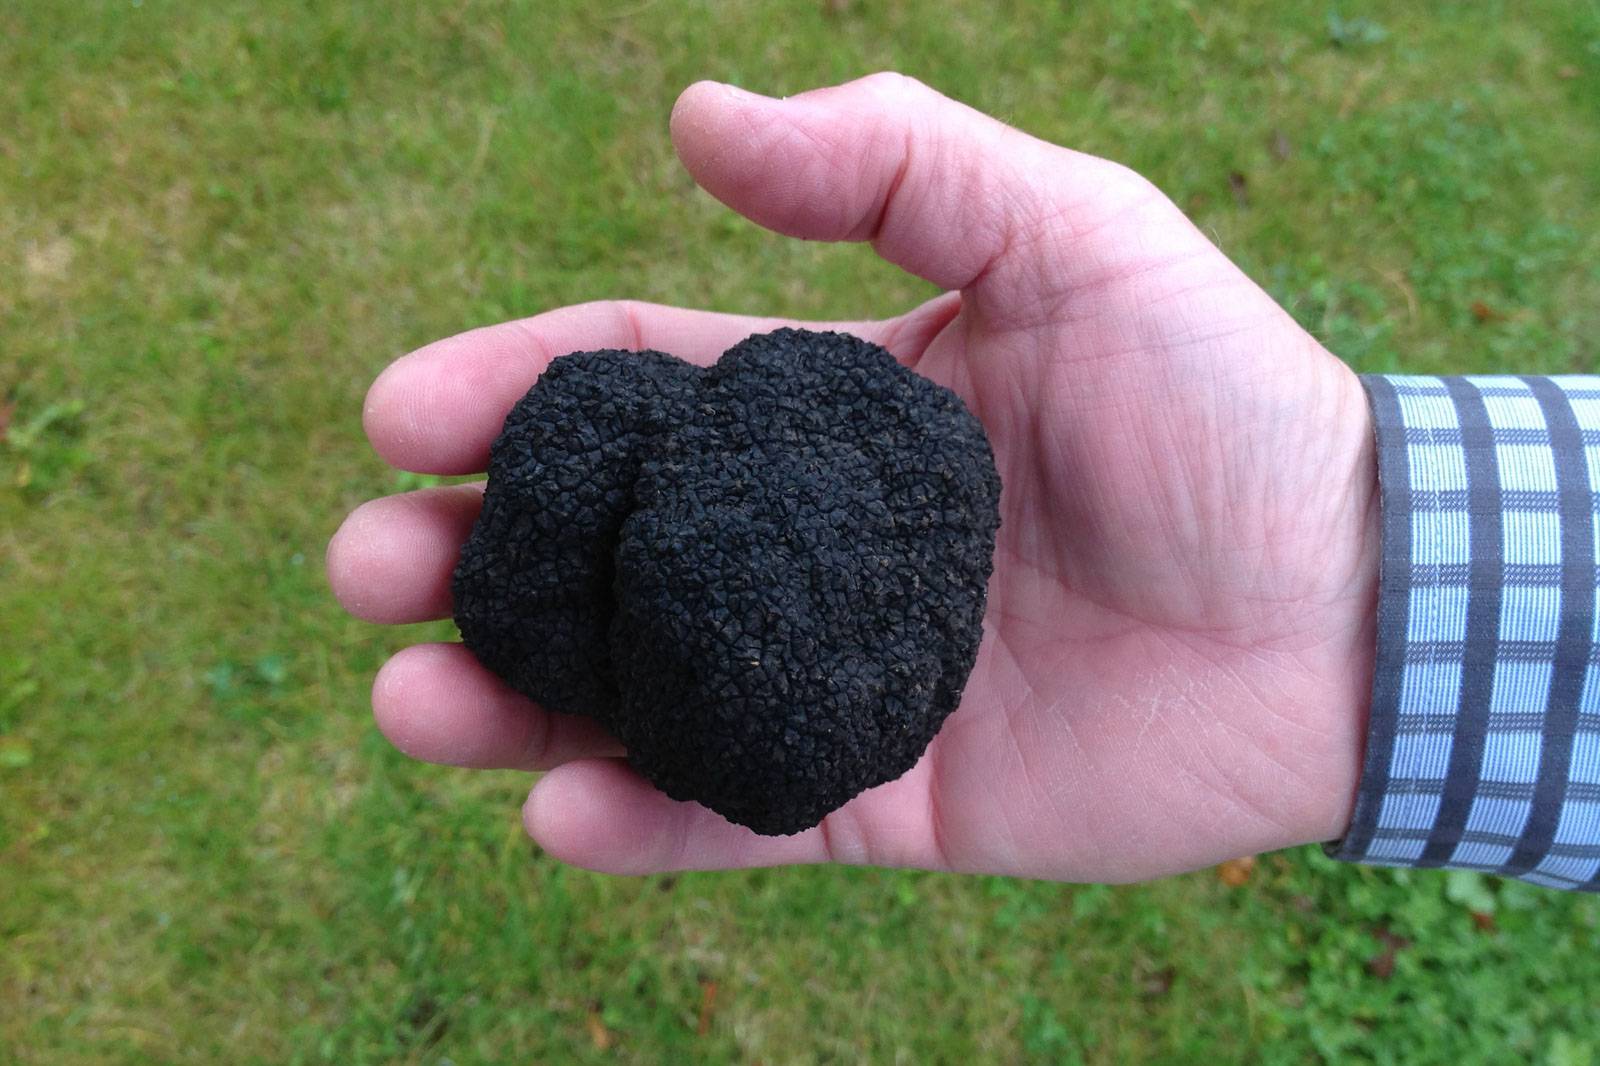 Summer truffle found in Denmark